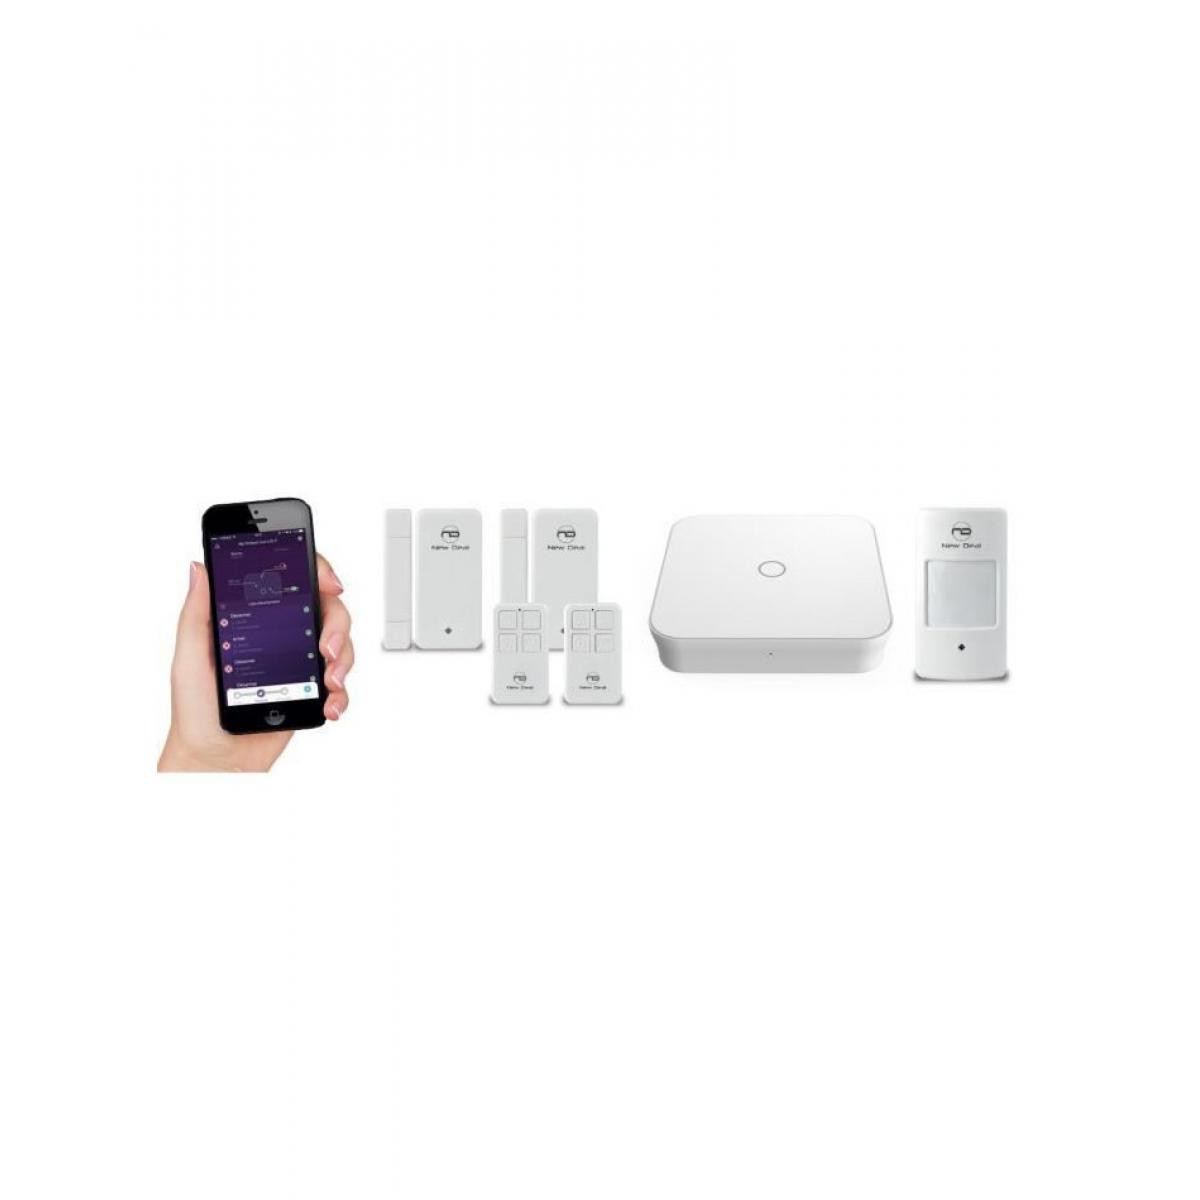 New Deal - NEW DEAL Pack Alarme maison WIFI / LAN / GSM Live Pro-L15 sans fil connectée avec batterie et sirene - Alarme connectée